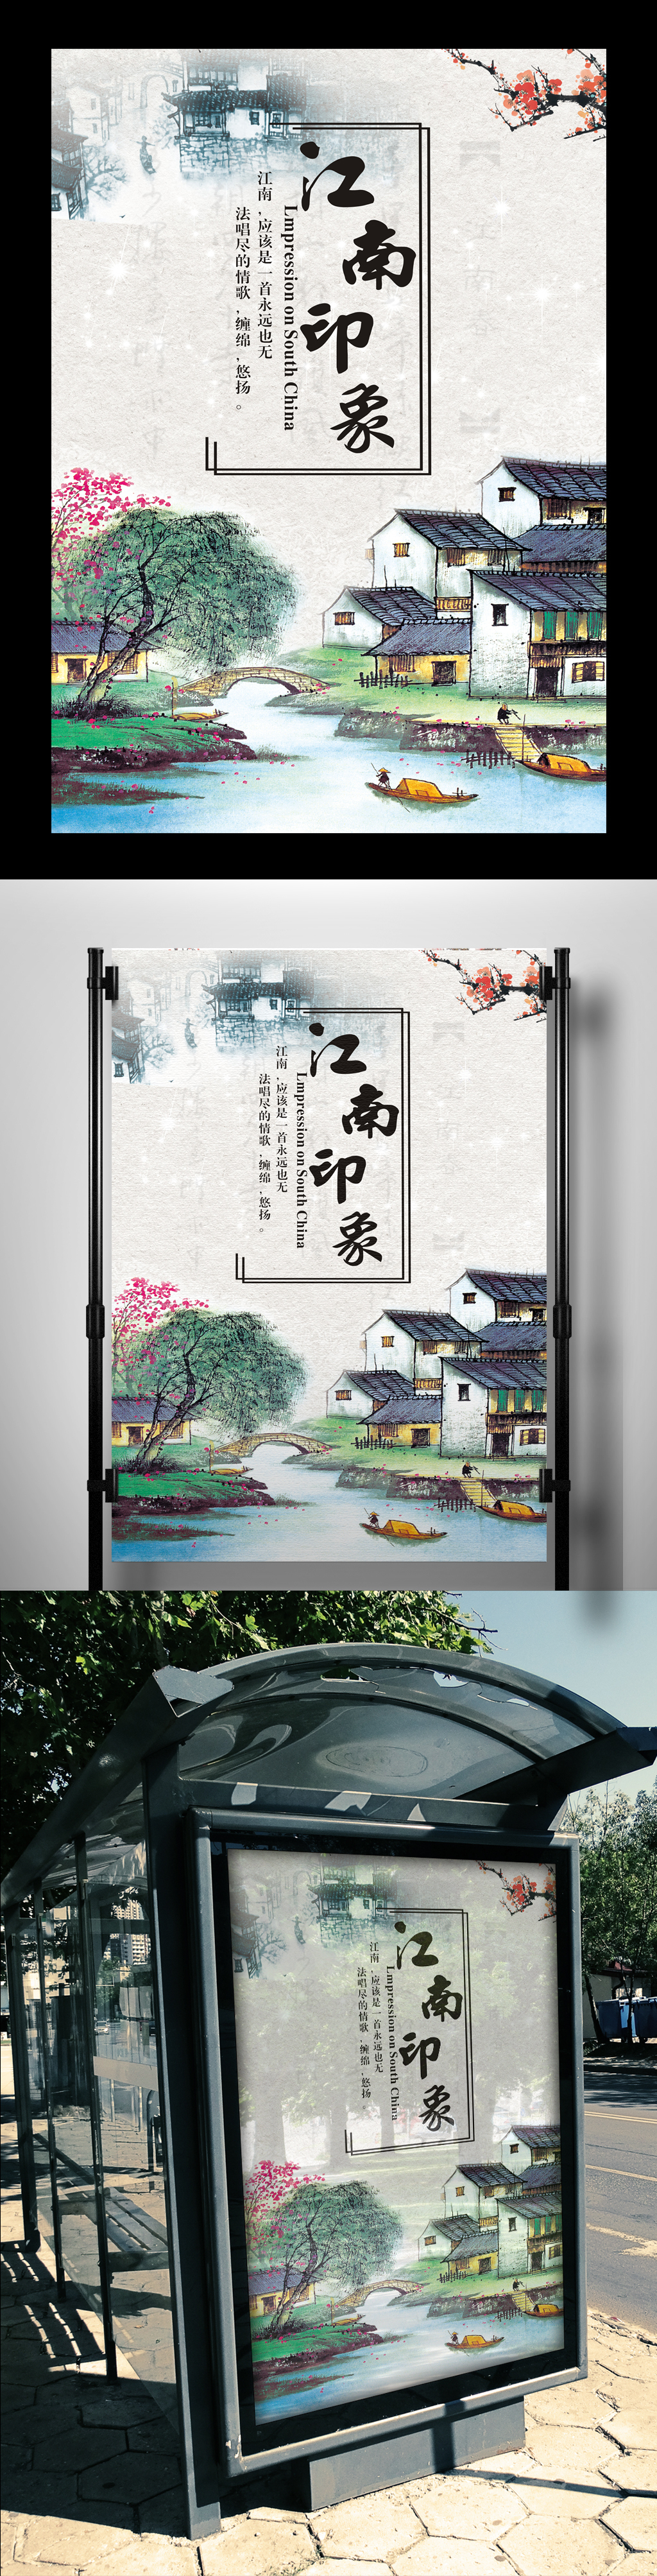 中国风江南水乡旅游宣传海报图片